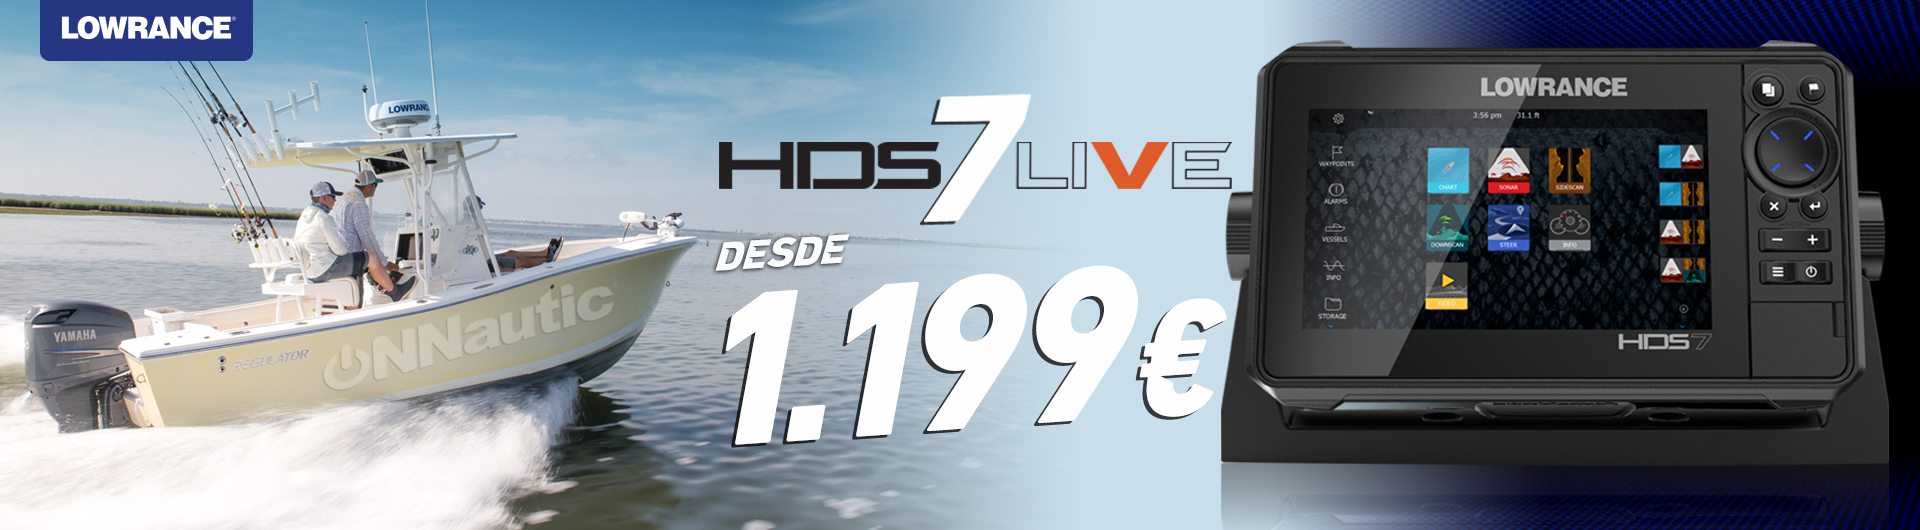 Compra tu HDS 7 LIVE desde 1199€. Una Oferta que no puedes dejar pasar, aquí en ONNautic.